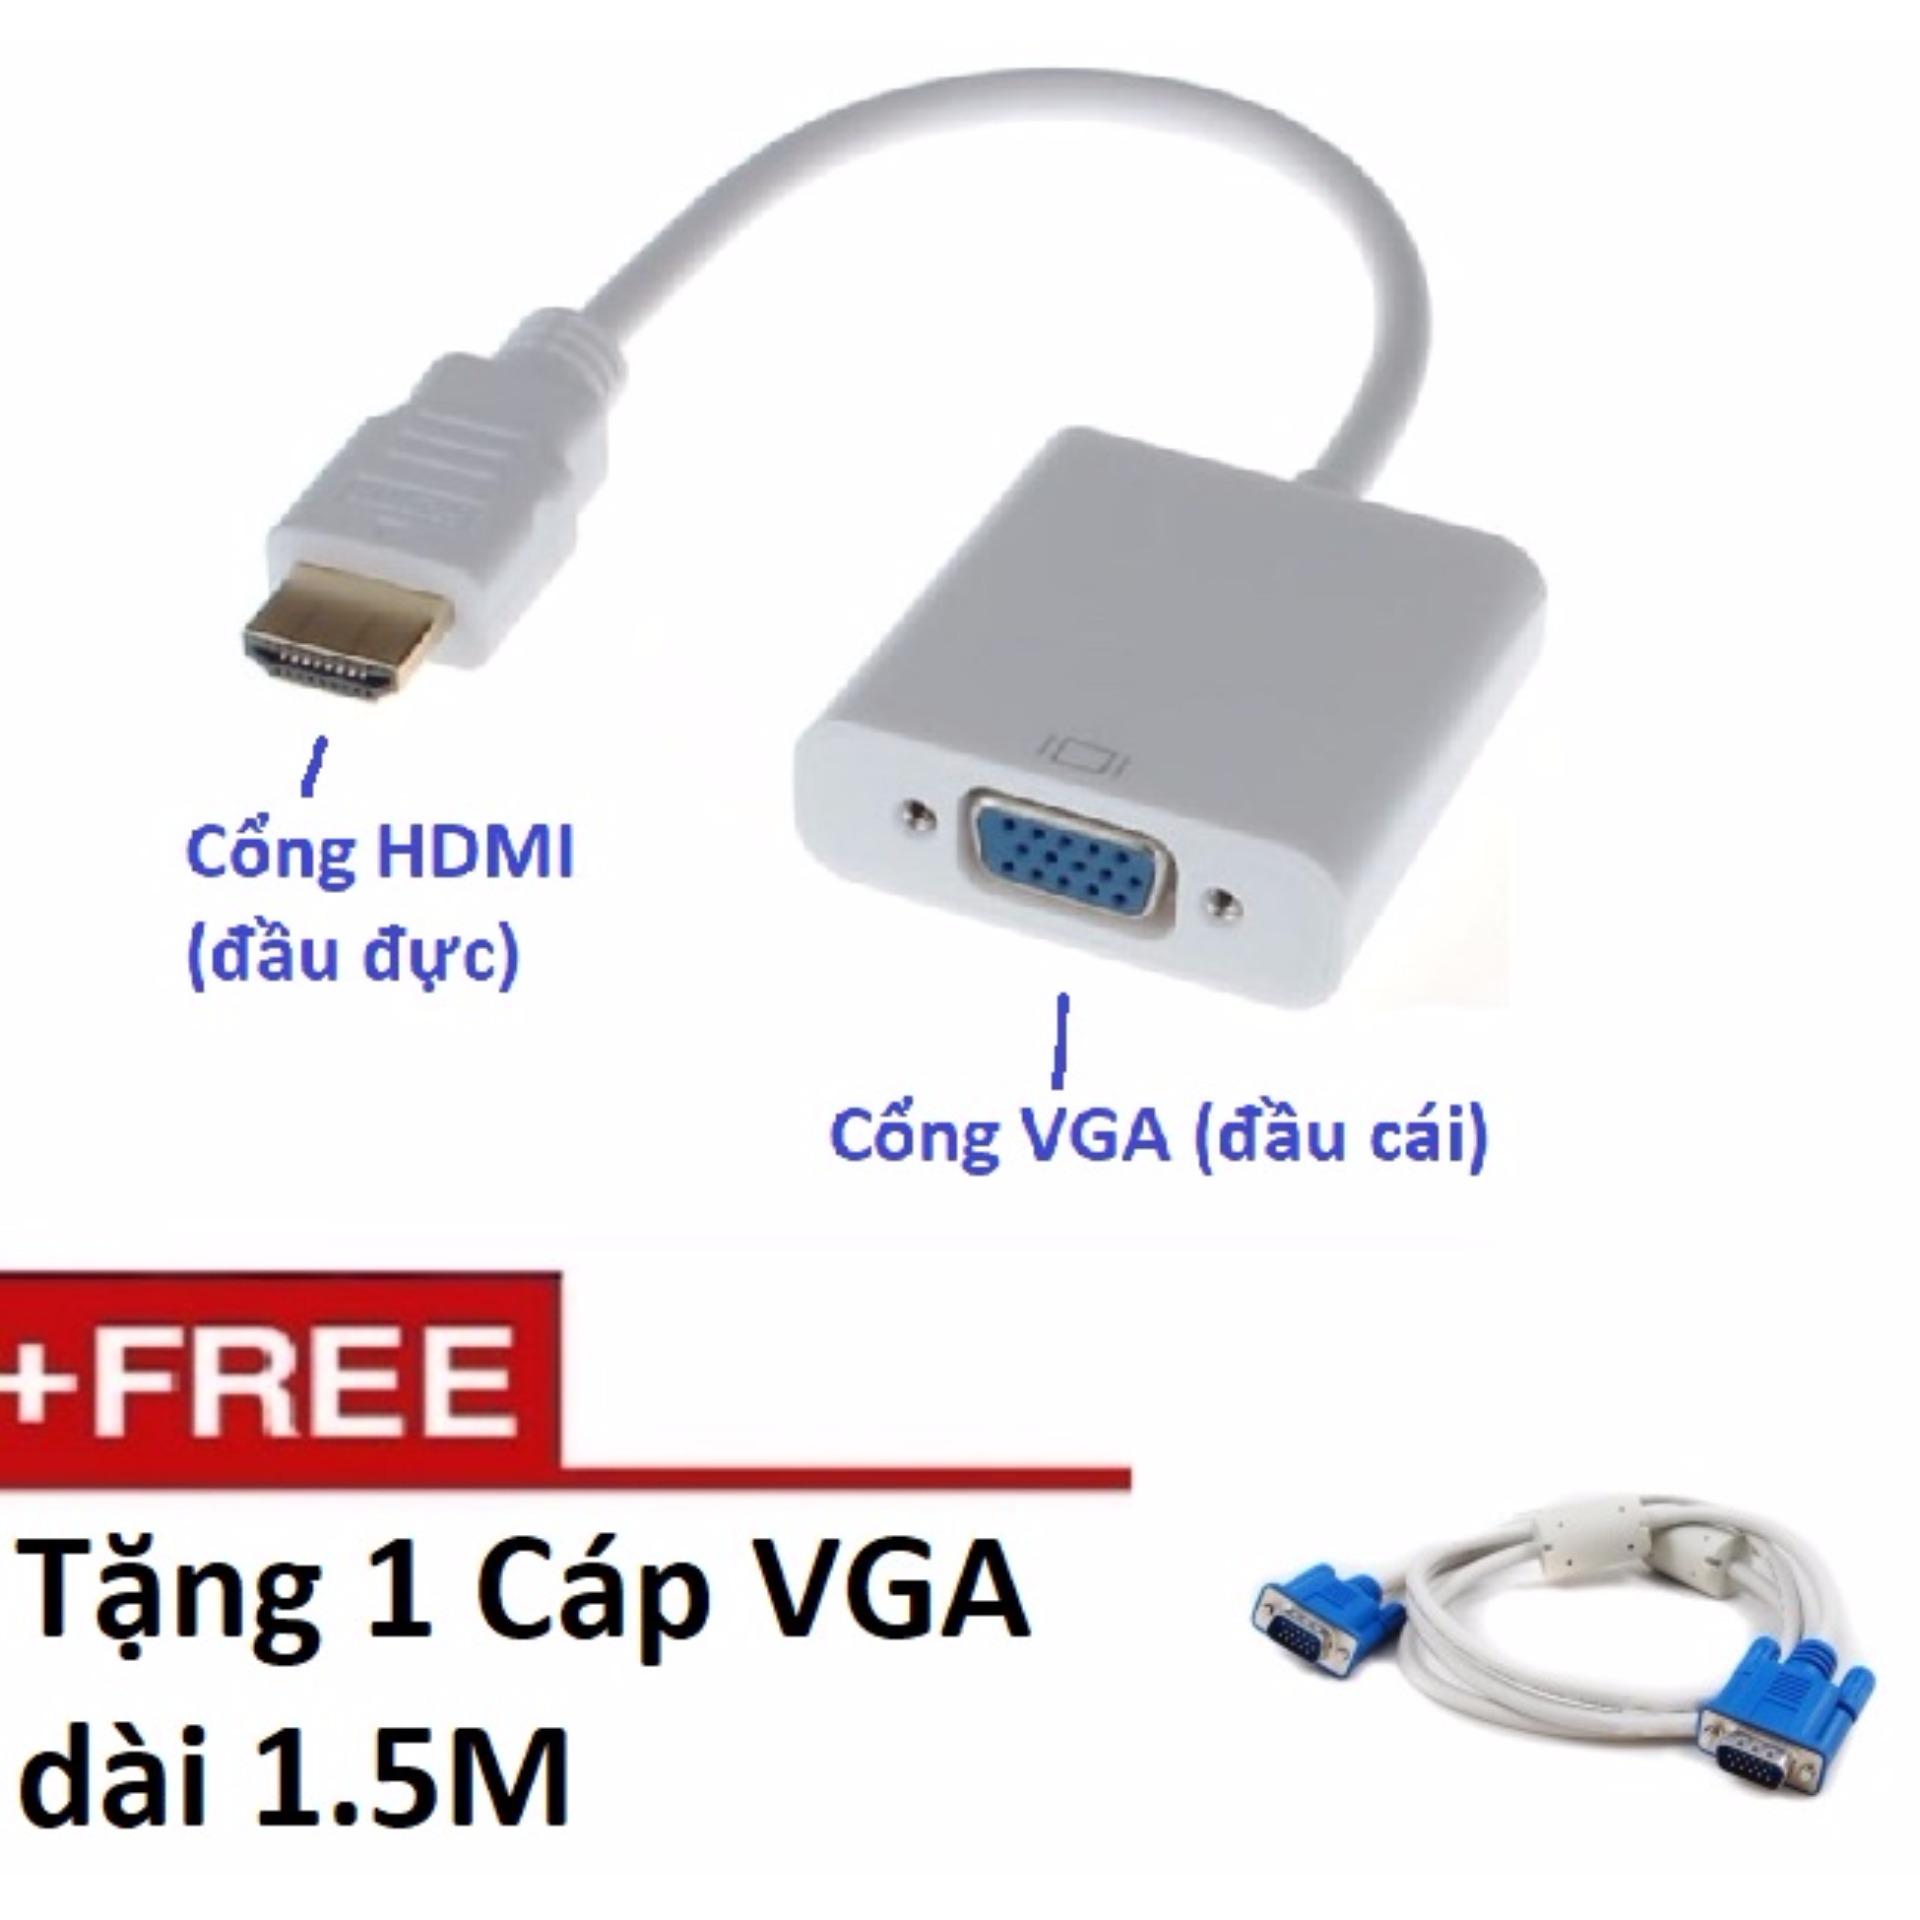 Cáp chuyển HDMI sang VGA Tặng kèm cáp VGA 1.5M